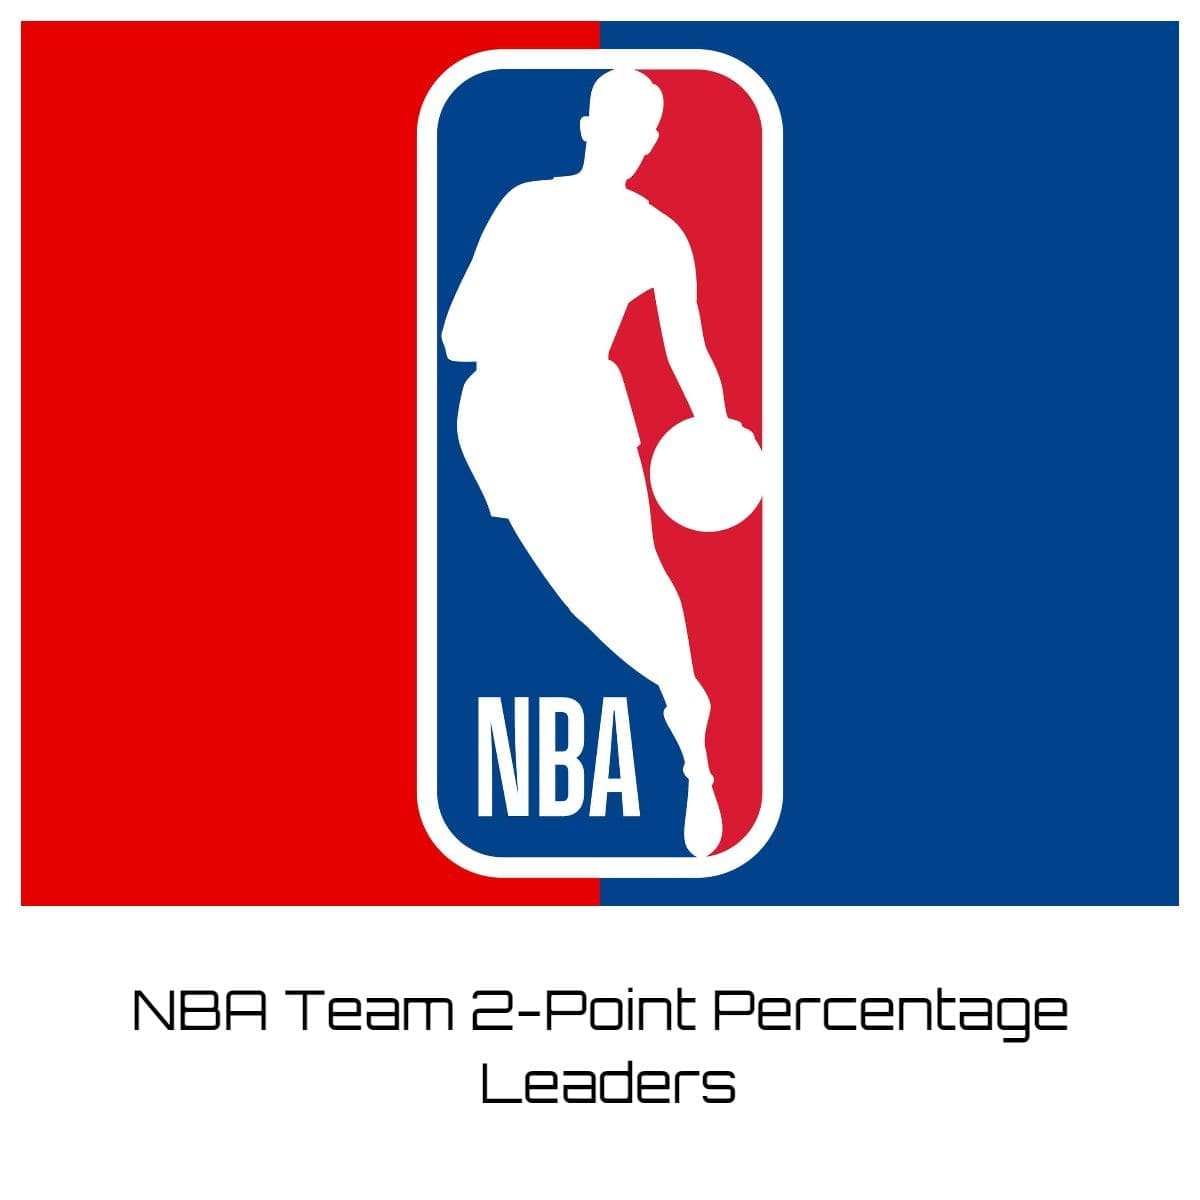 NBA Team 2-Point Percentage Leaders